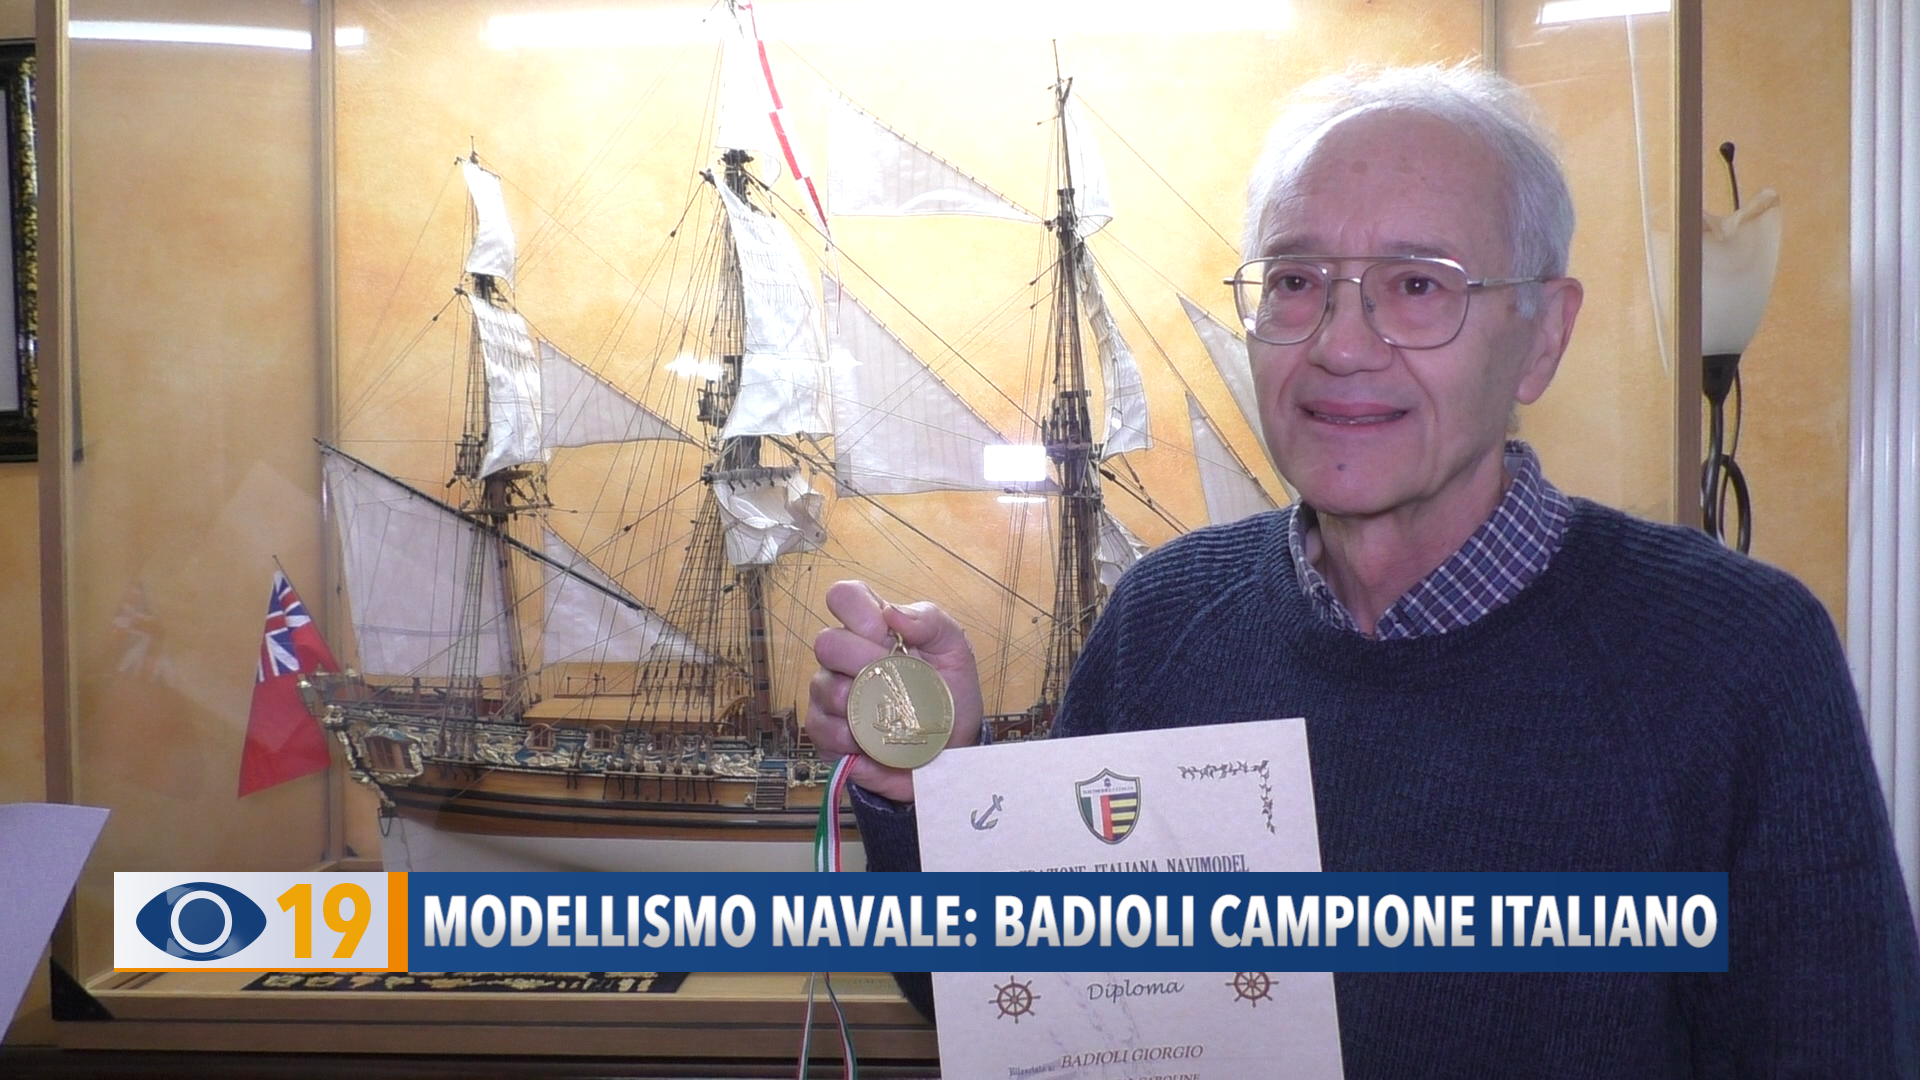 Modellismo navale: Badioli campione italiano - VIDEO - Occhio alla Notizia